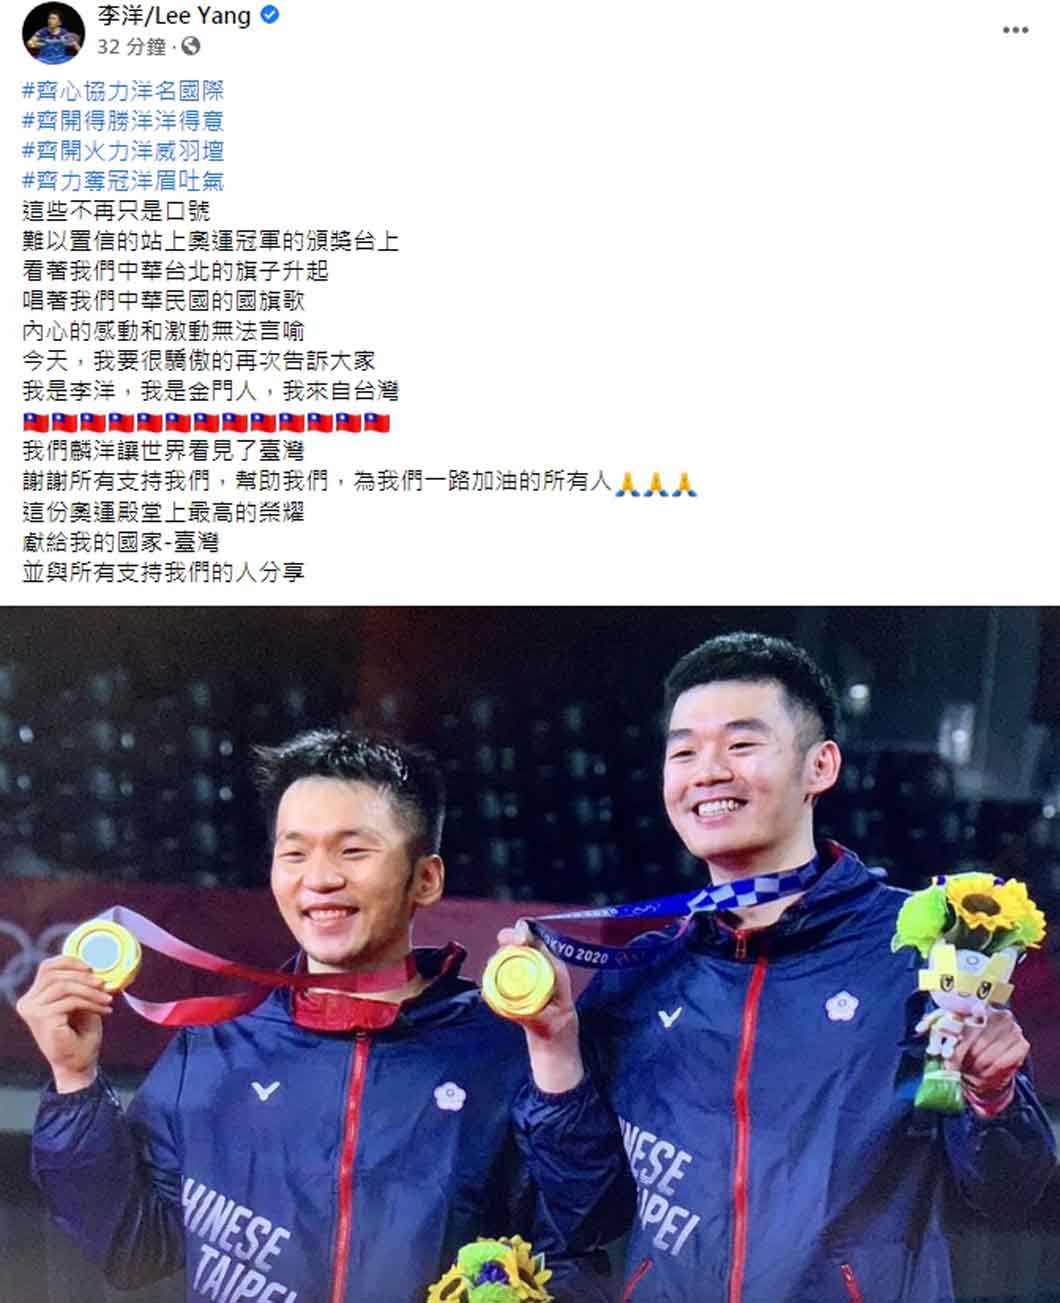 2021年7月，中國臺北選手李洋在東京奧運男子雙人羽球項目奪金後，便在臉書上公然聲稱「我的國家臺灣」，顯然出身自福建省金門縣的李洋，把同為省名的臺灣視為「國號」。(圖片擷取自李洋臉書)